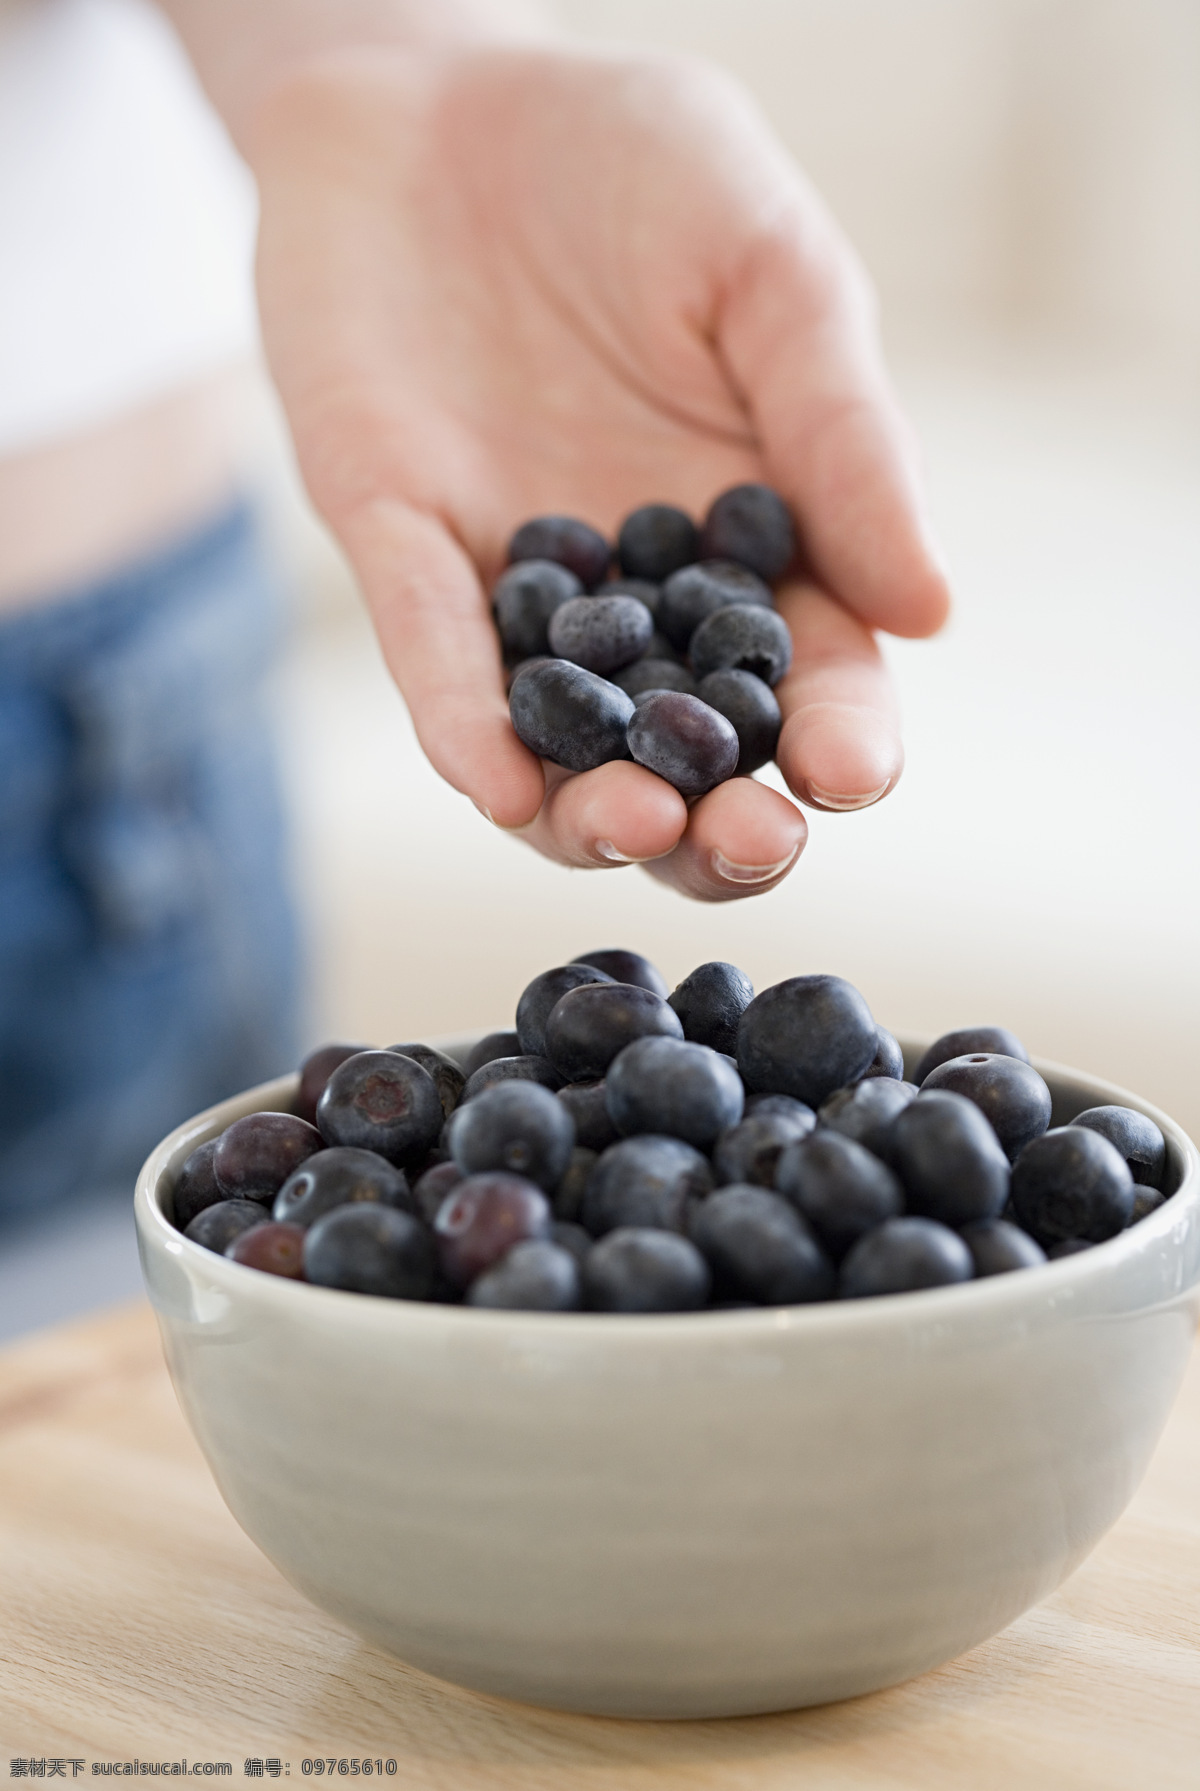 新鲜 蓝莓 新鲜水果 果实 碗 手 捧着 蔬菜图片 餐饮美食